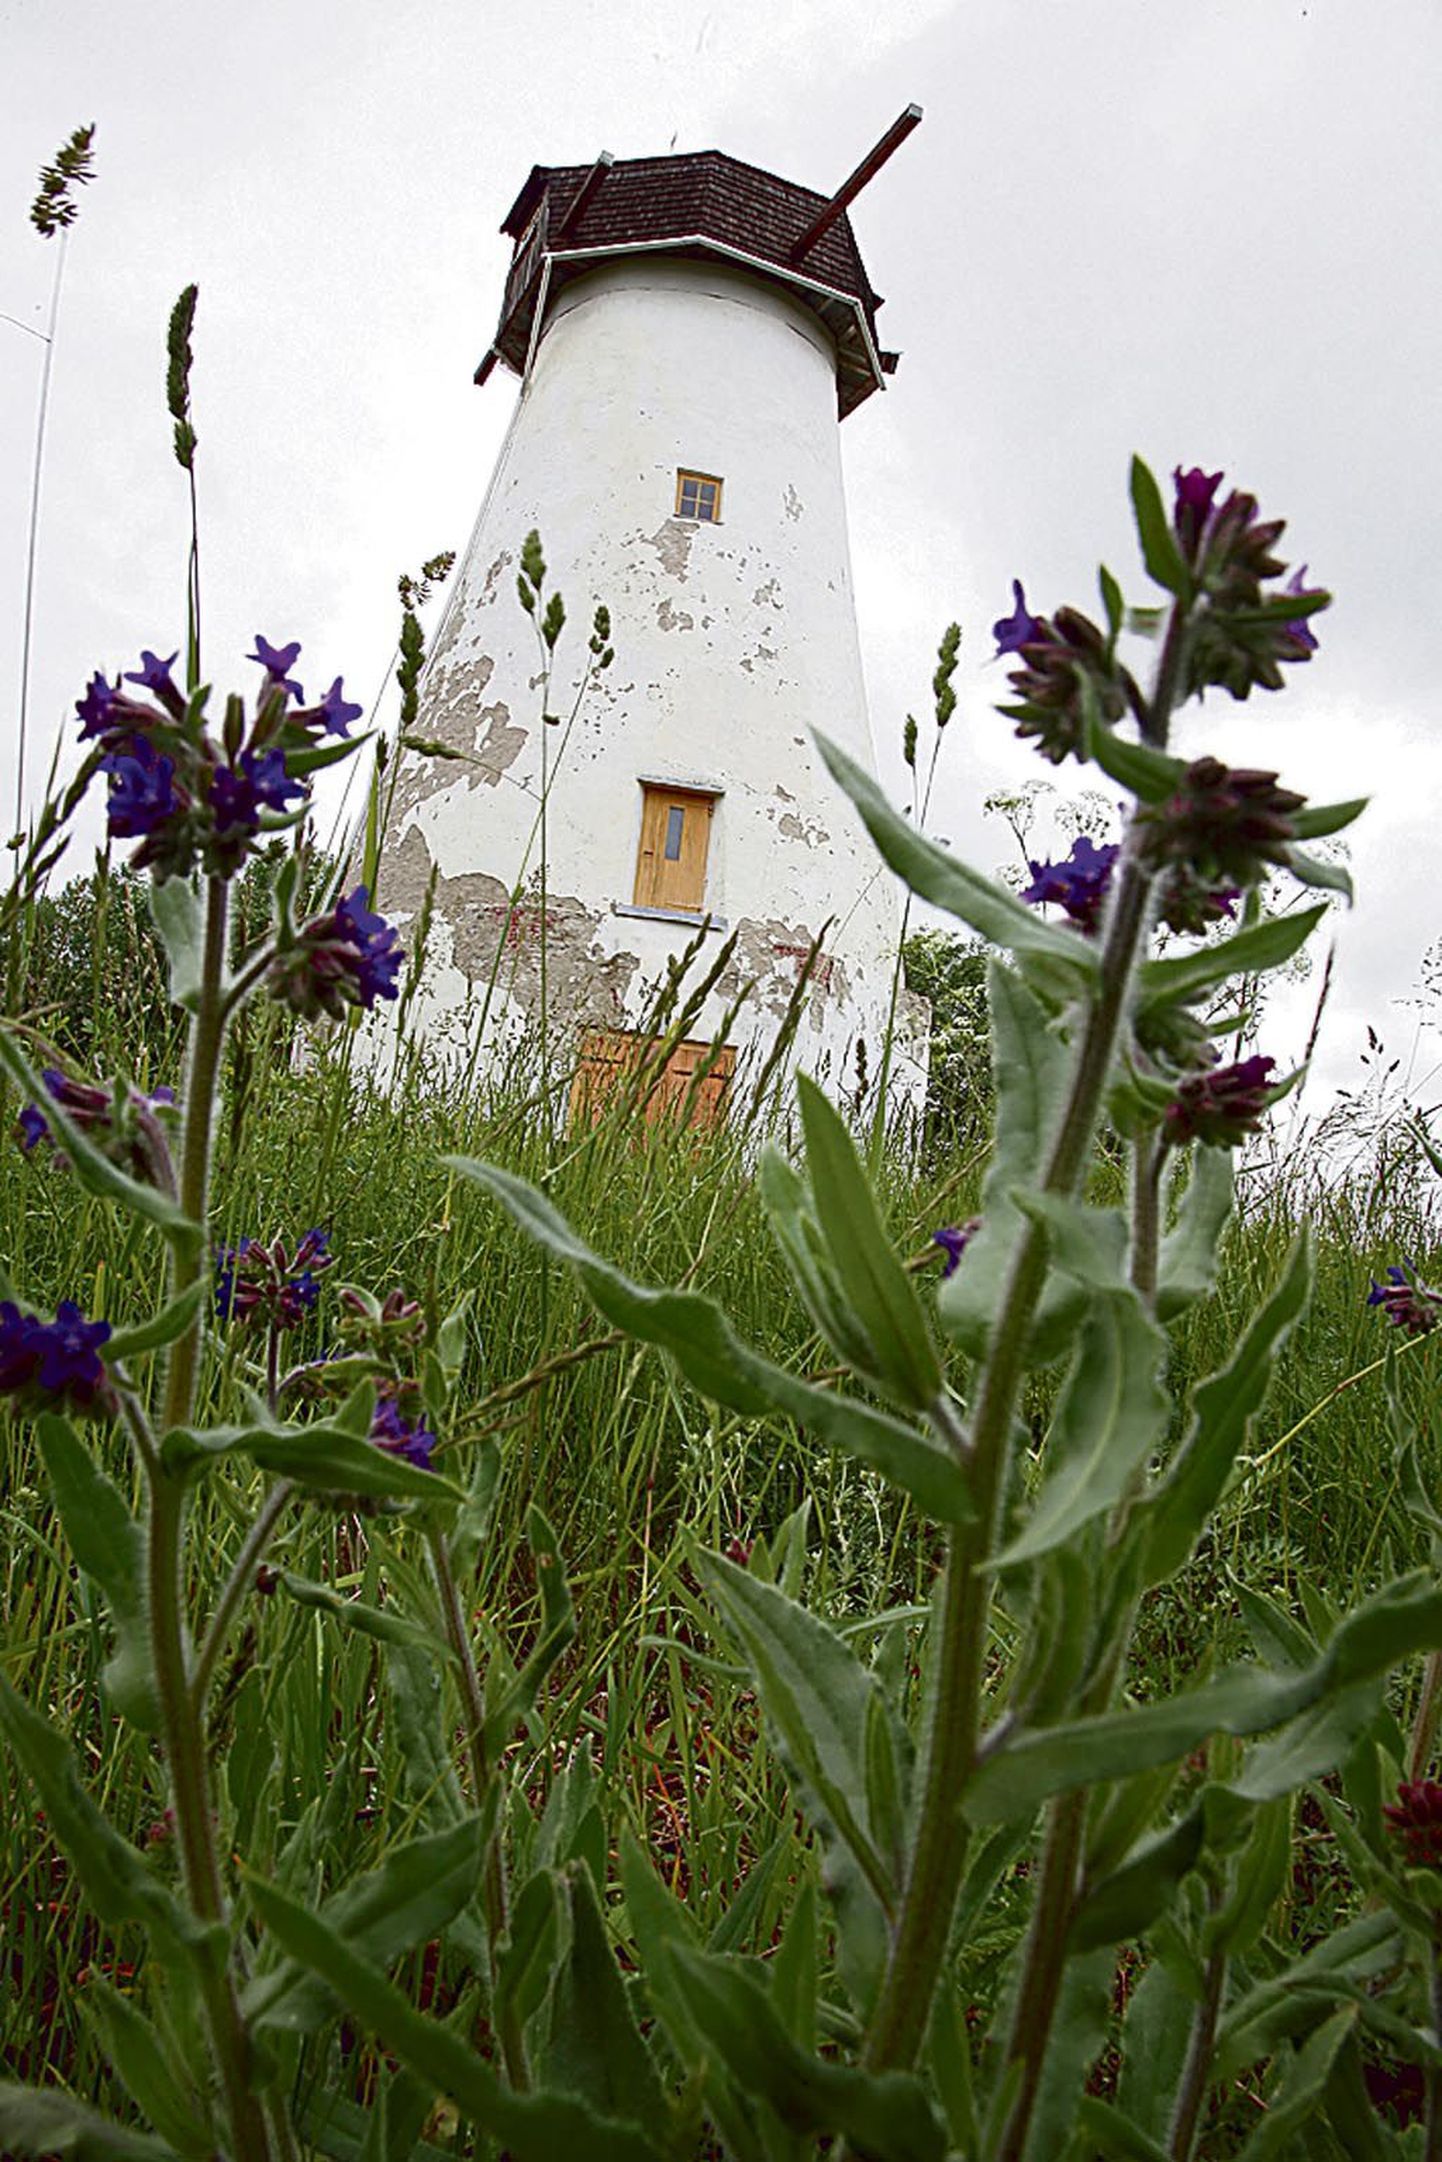 Hollandi tüüpi Pootsi tuulik on kantud kultuurimälestiste riiklikku registrisse 1998. aastal ja seda hakati taastama 2002. aastal.